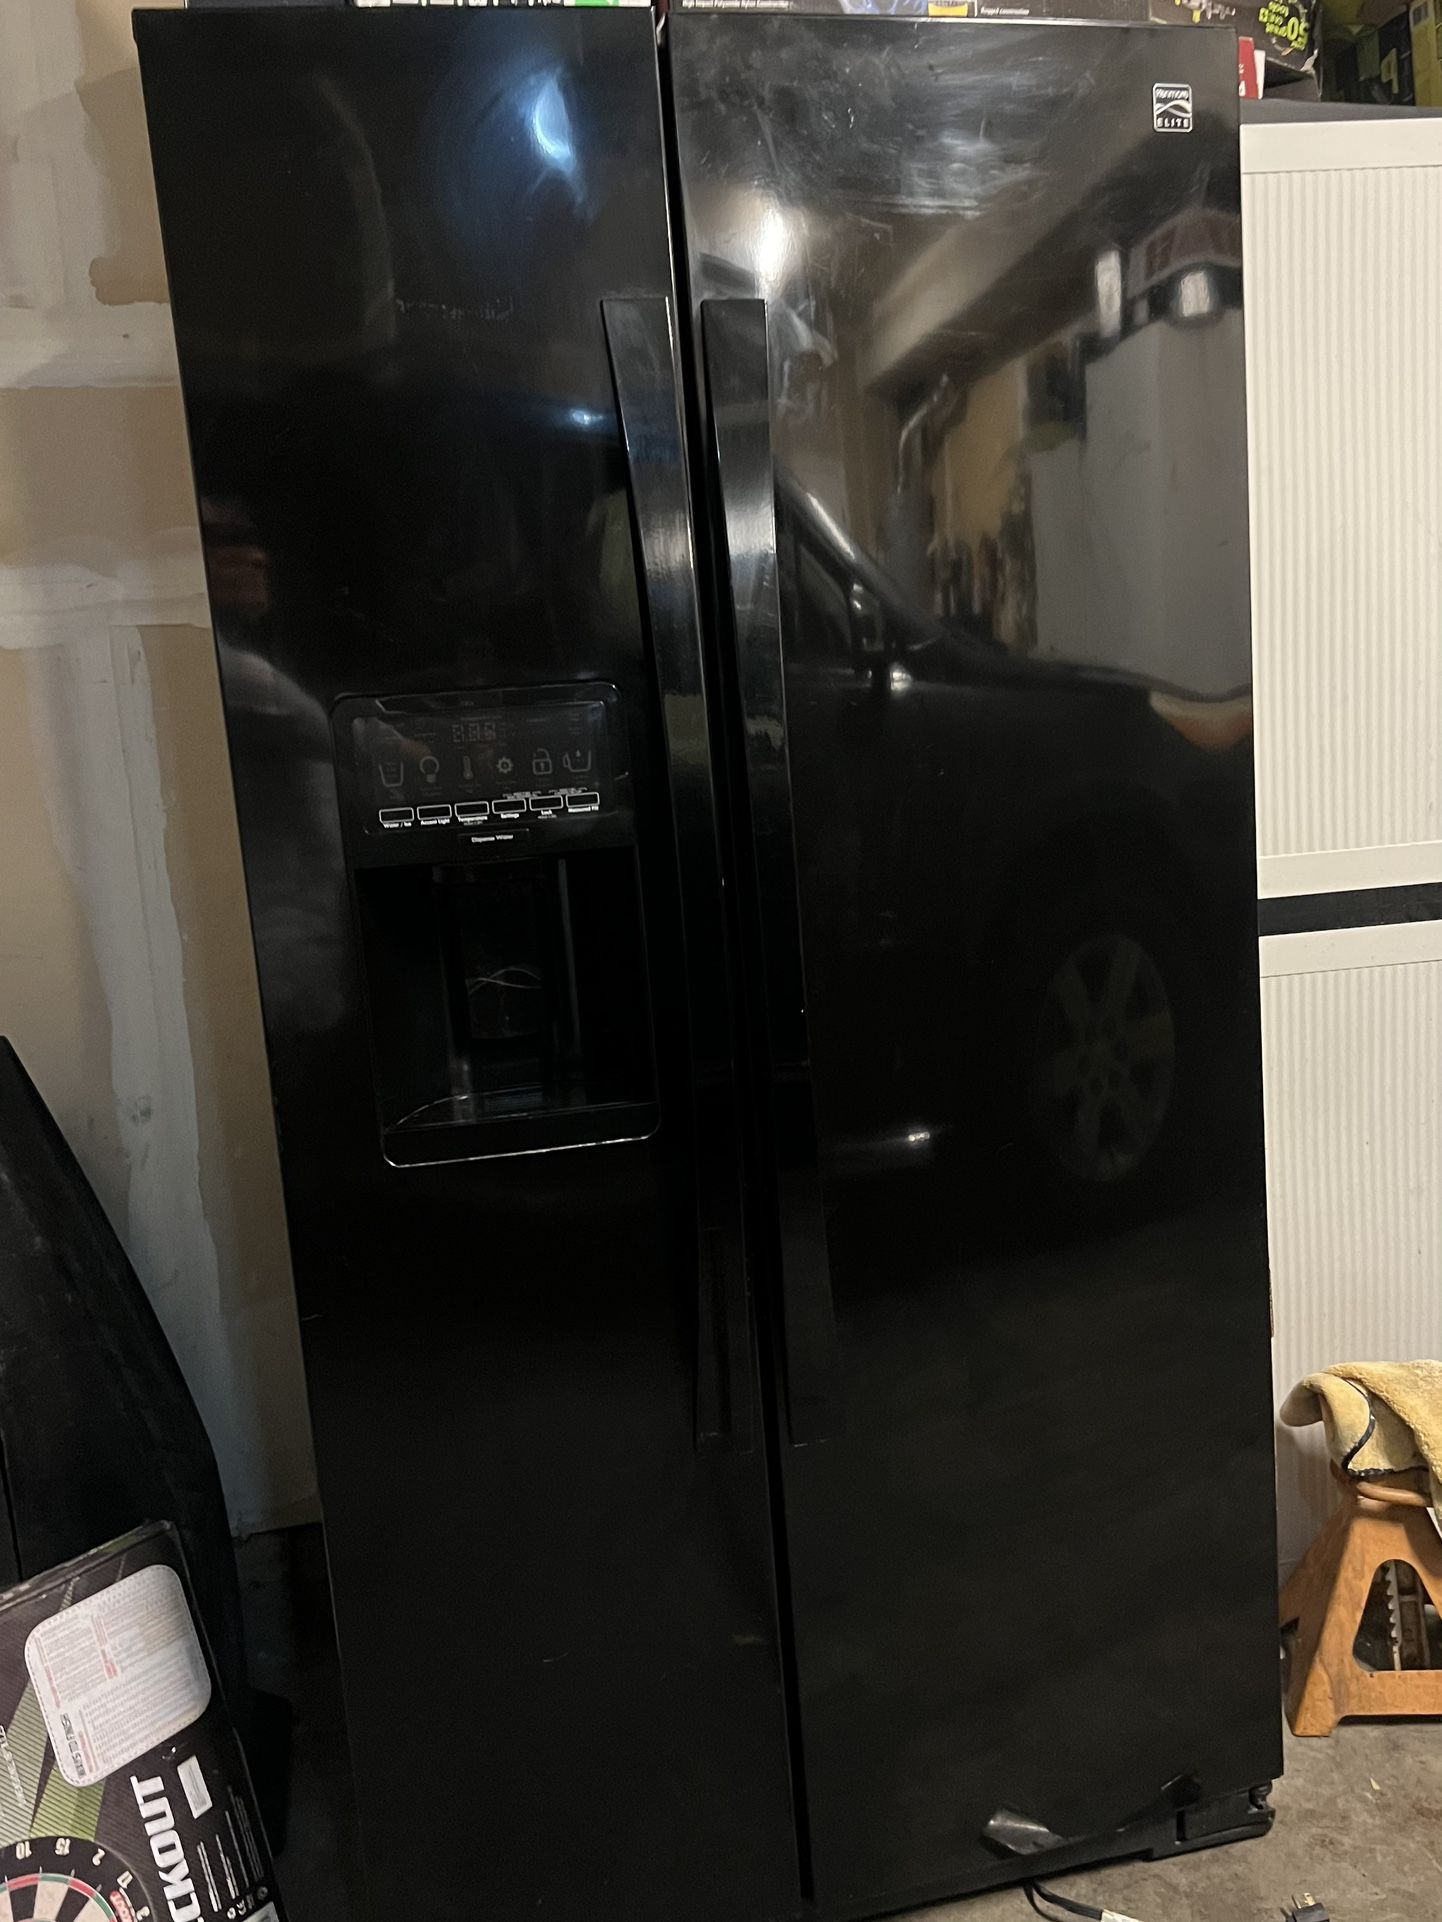 Kenmore Elite Refrigerator